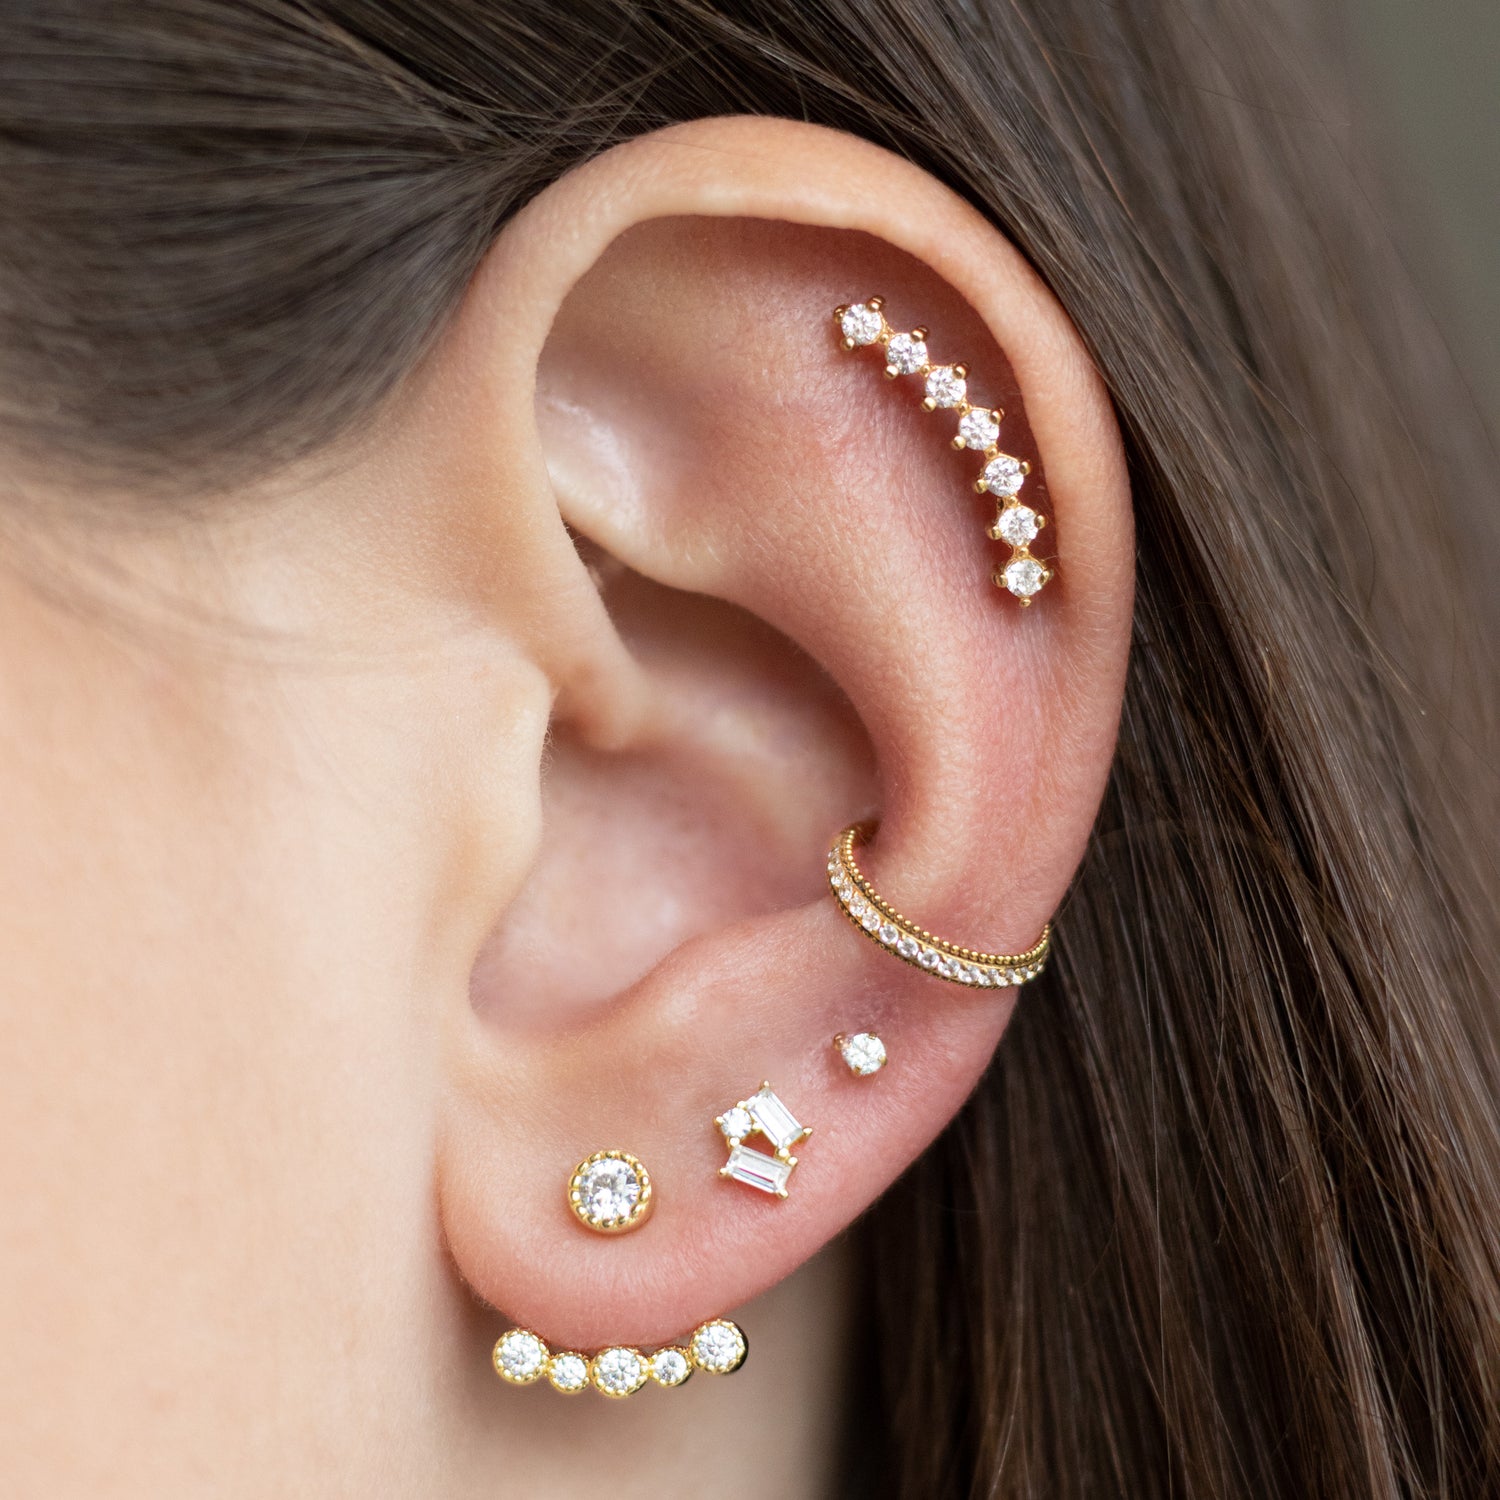 B.A. BA sur les piercings d'oreilles : Guide ultime pour les piercings d' oreilles